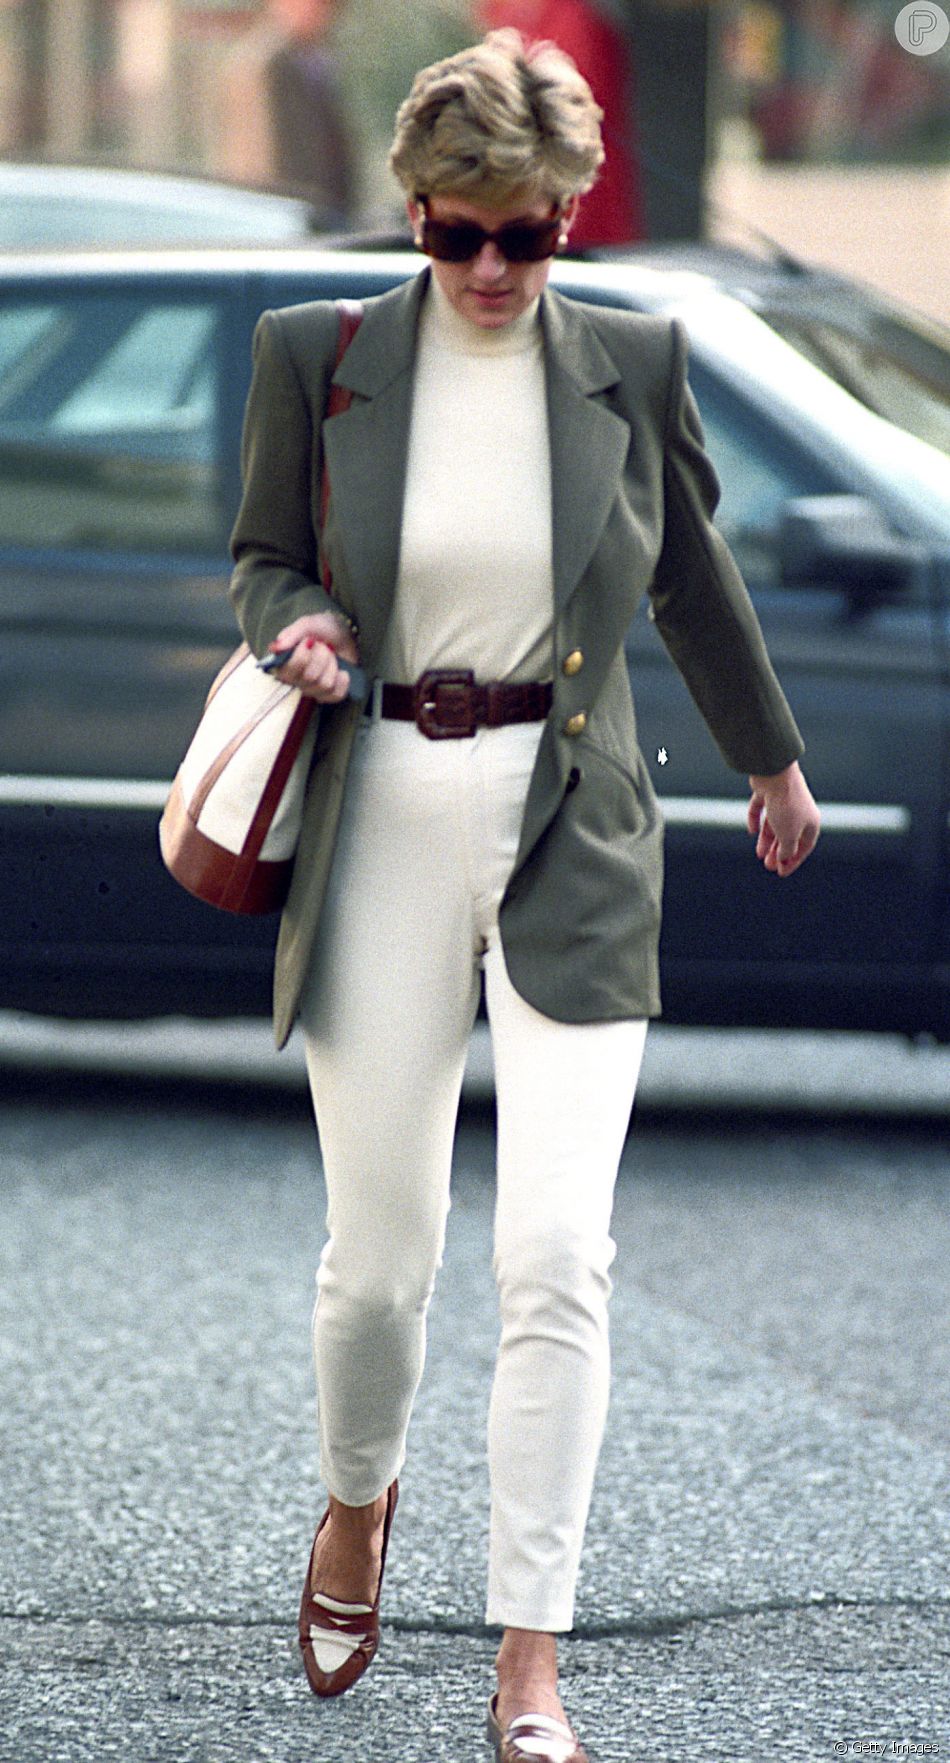 Blazer feminino: Princesa Diana usa opção mais acinturada junto com look monocromático